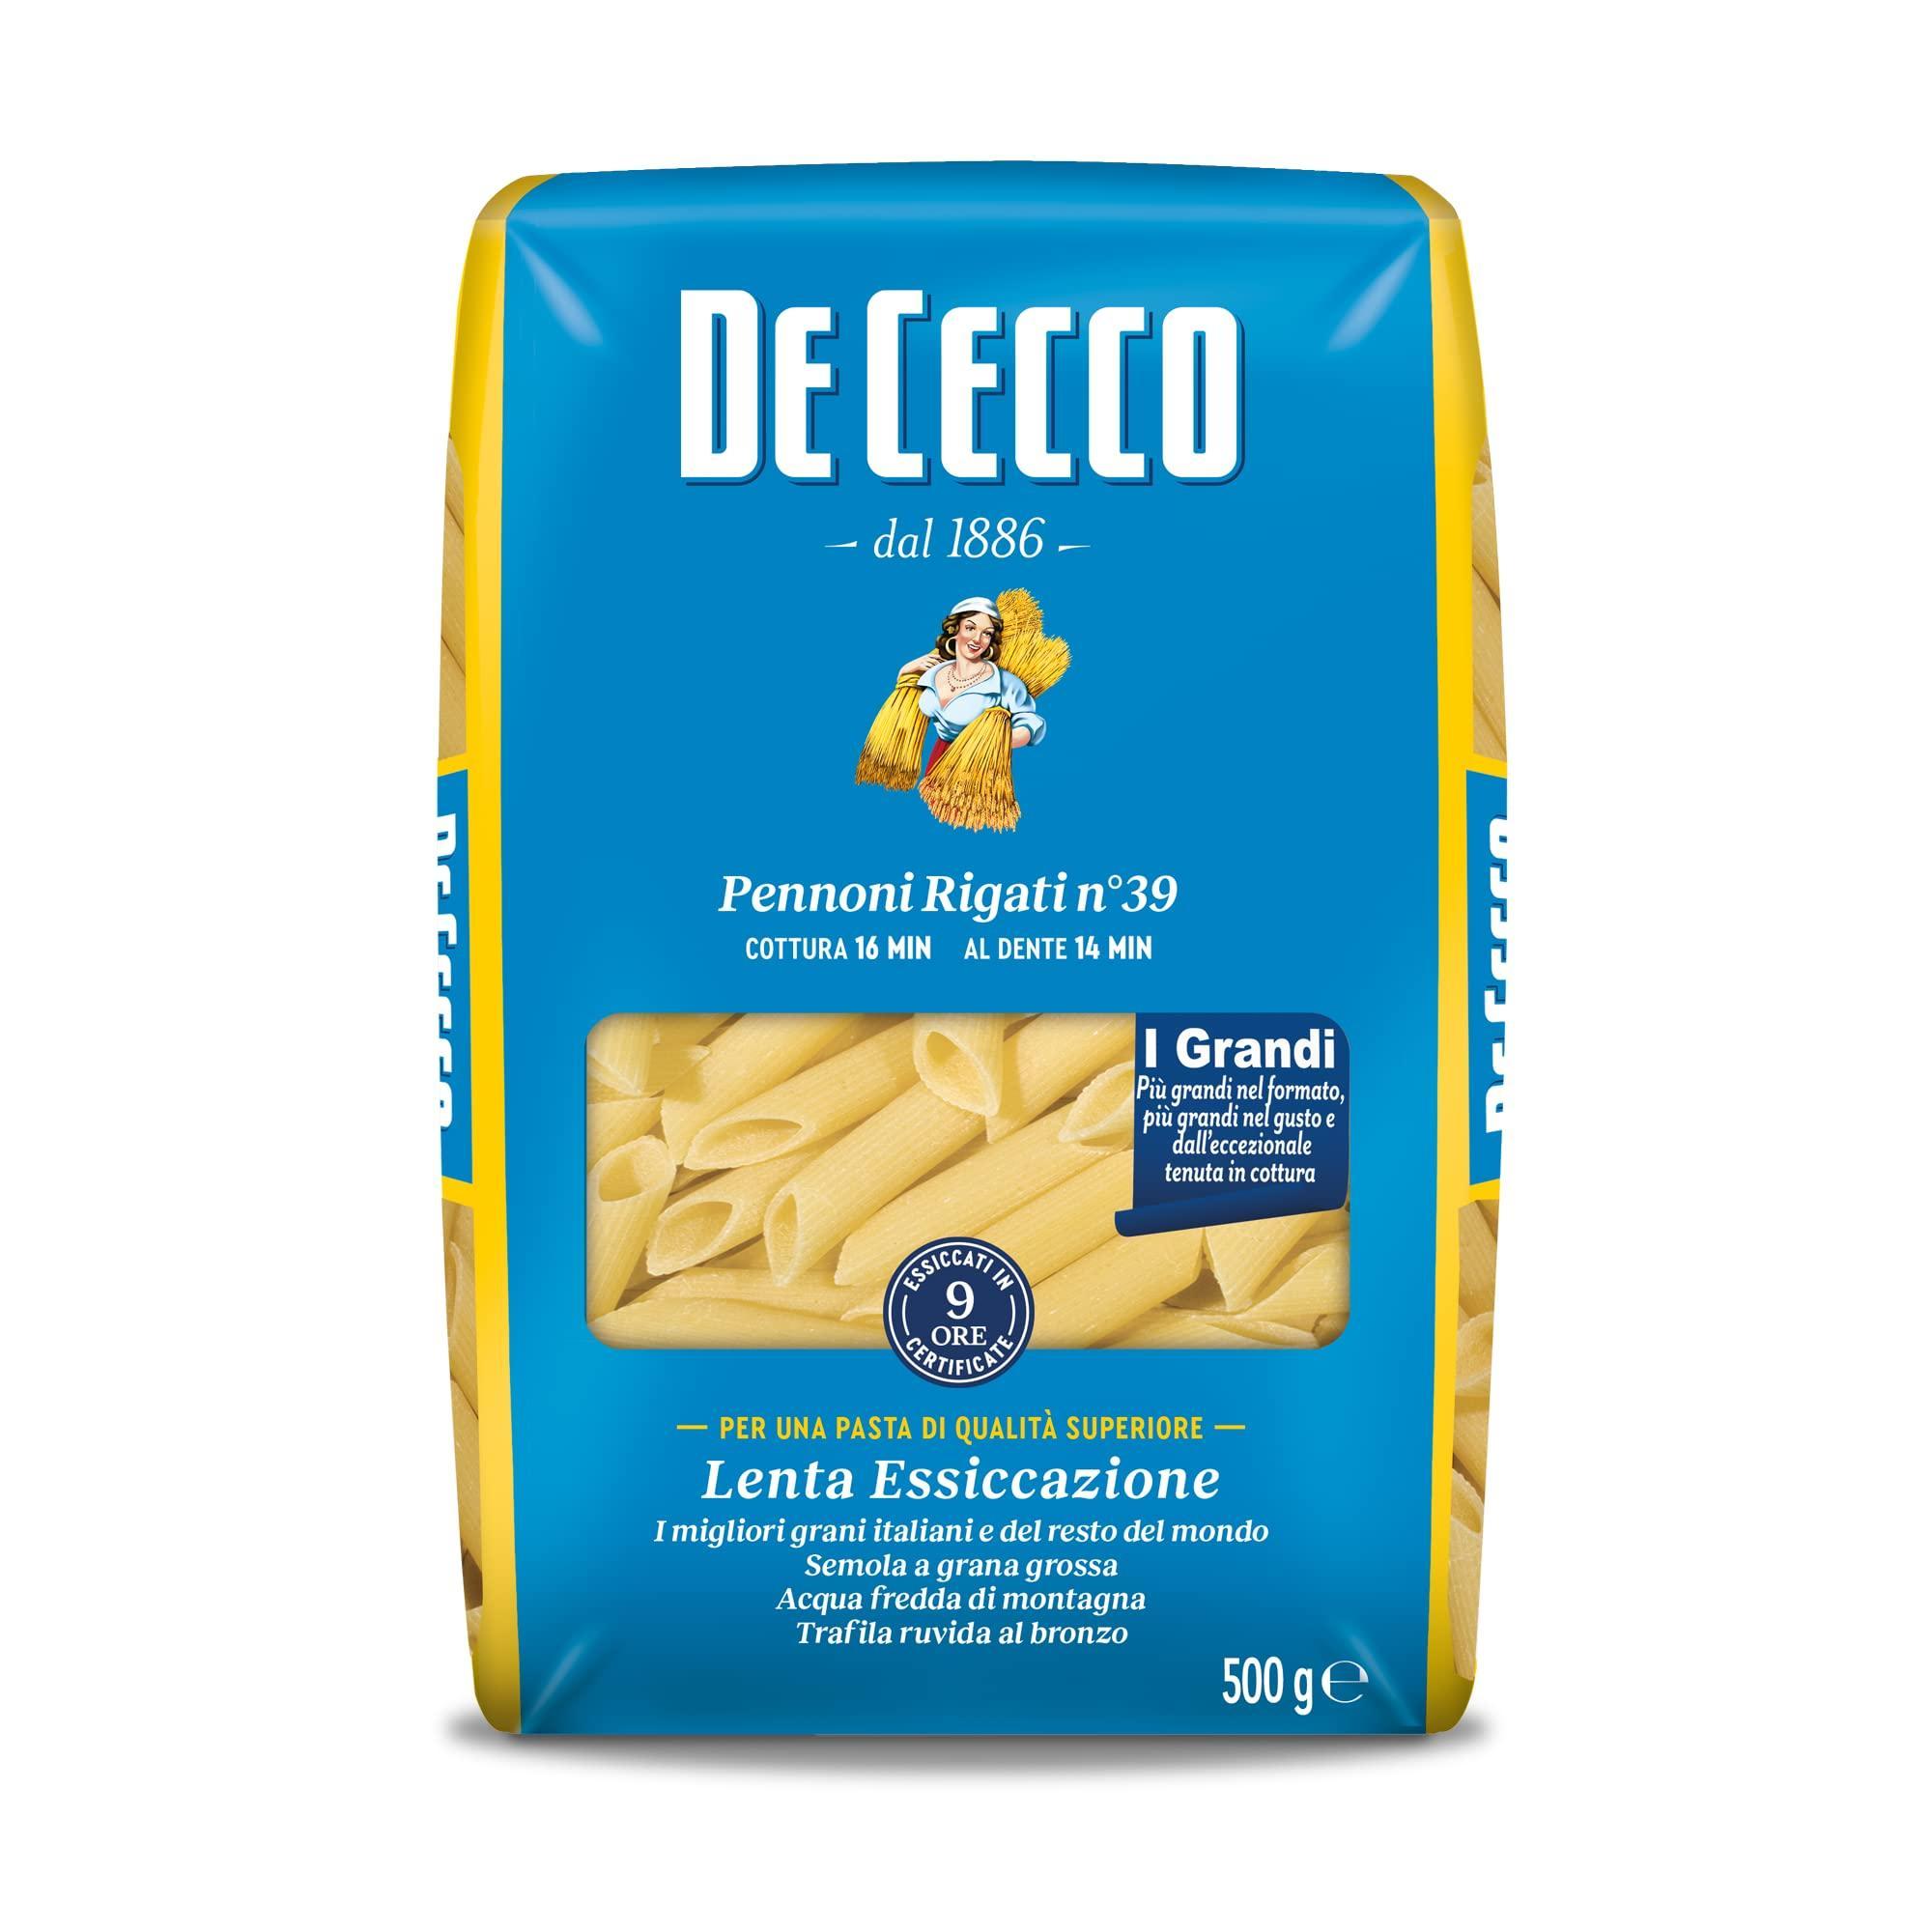 pasta-pennoni-rigati-de-cecco-500-gr